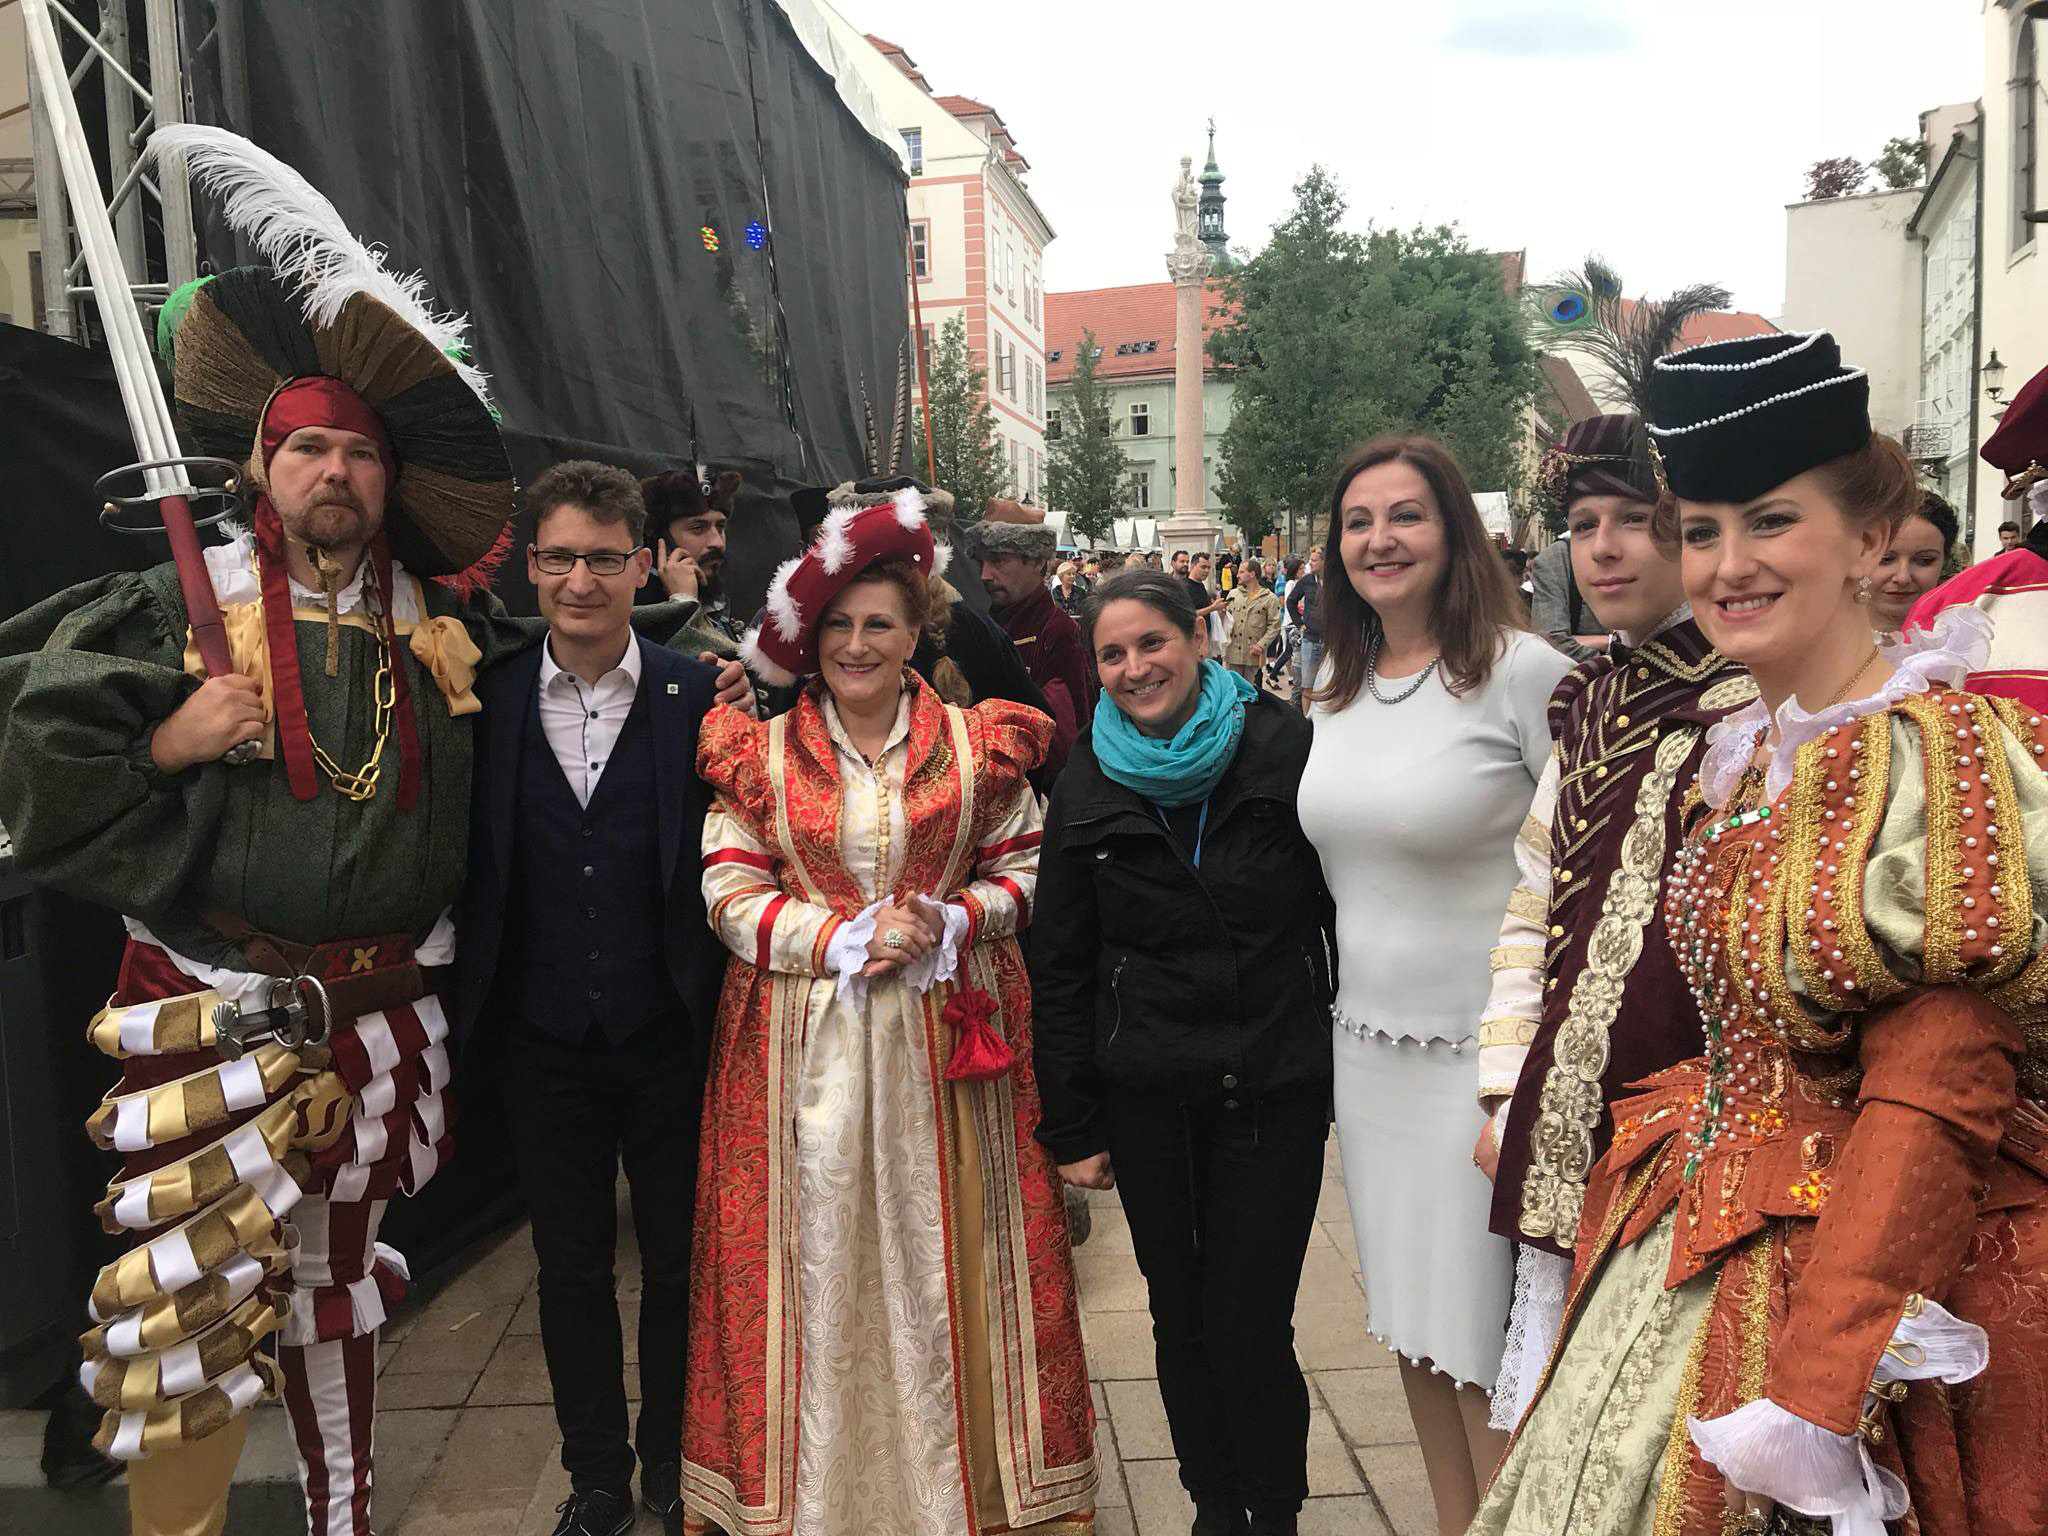 Polgármesteri látogatás Pozsonyban, a Koronázási Játékokon